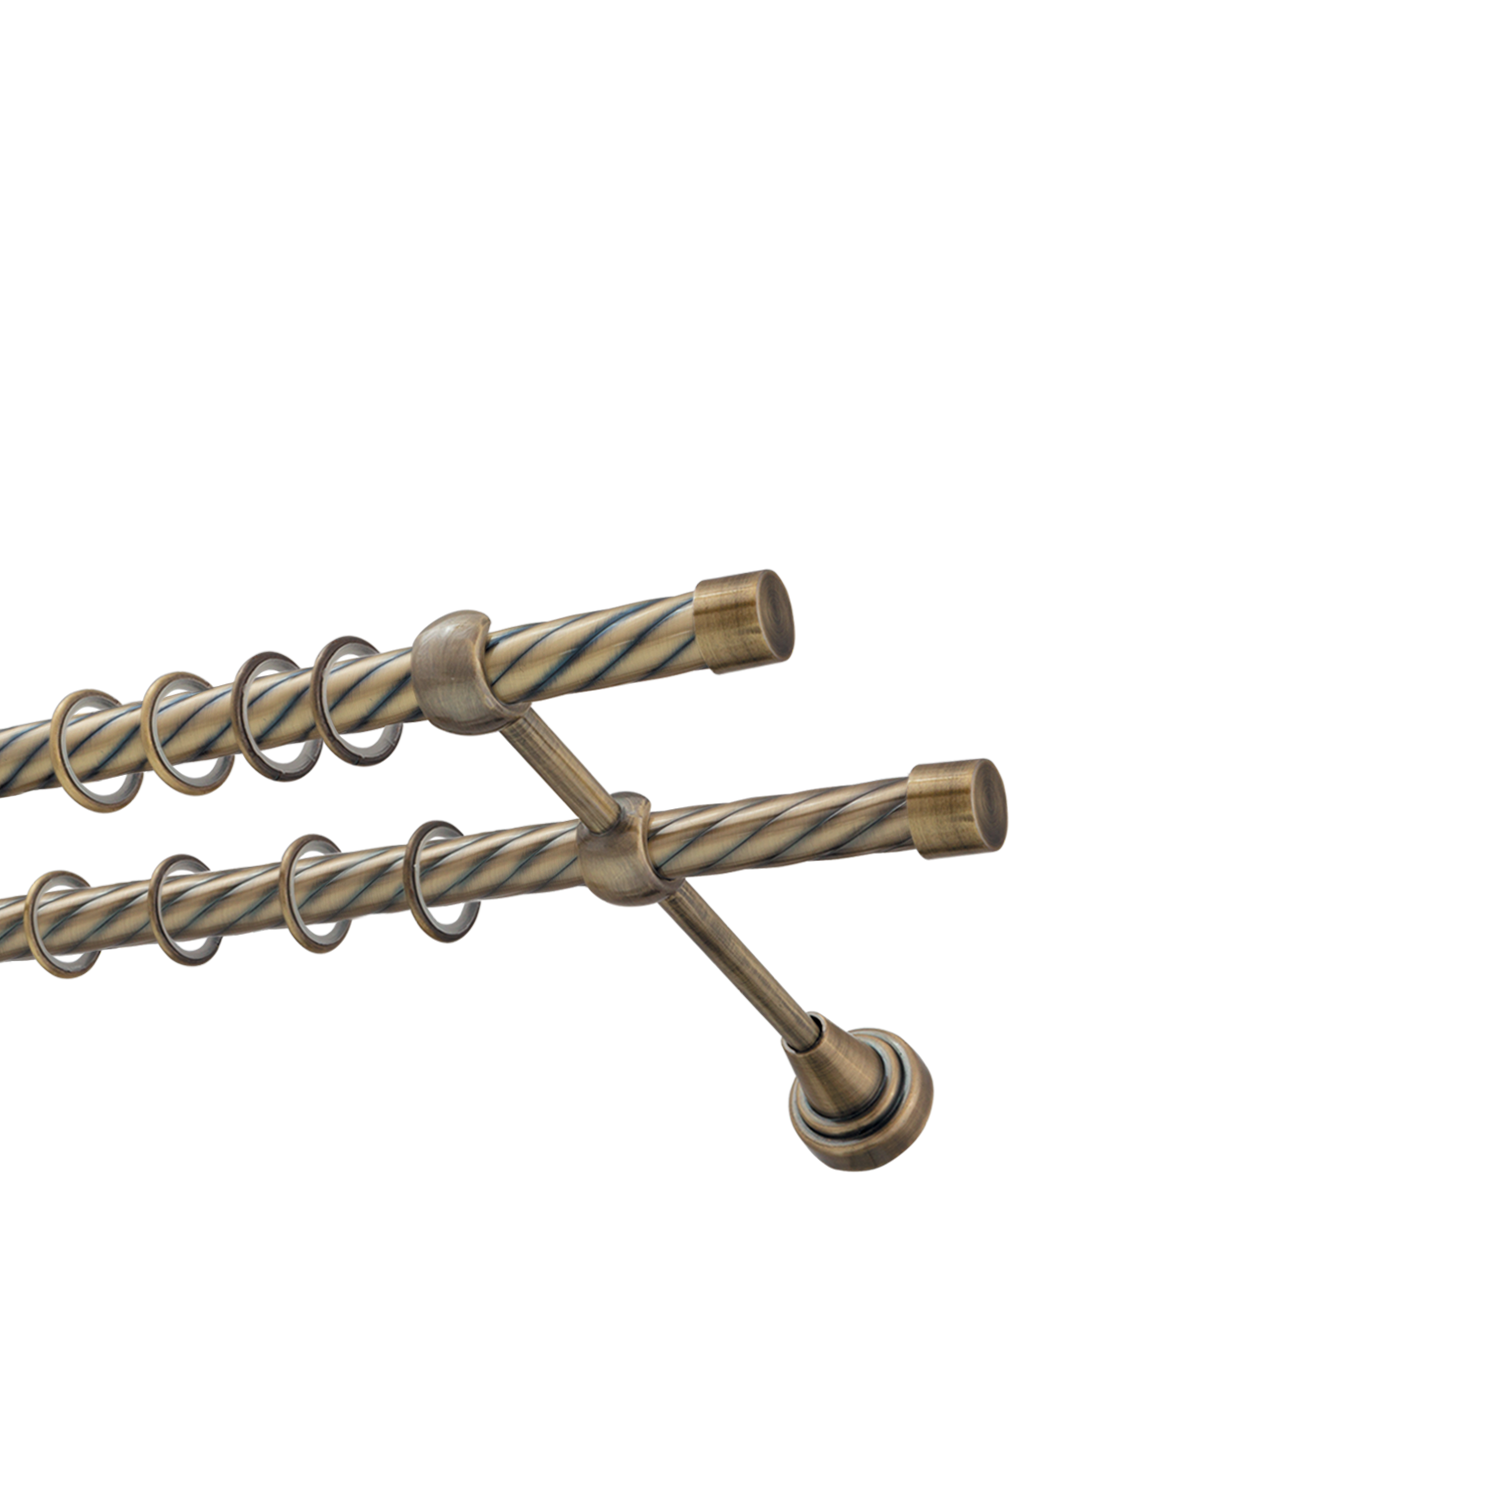 Металлический карниз для штор Заглушка, двухрядный 16/16 мм, бронза, витая штанга, длина 180 см - фото Wikidecor.ru